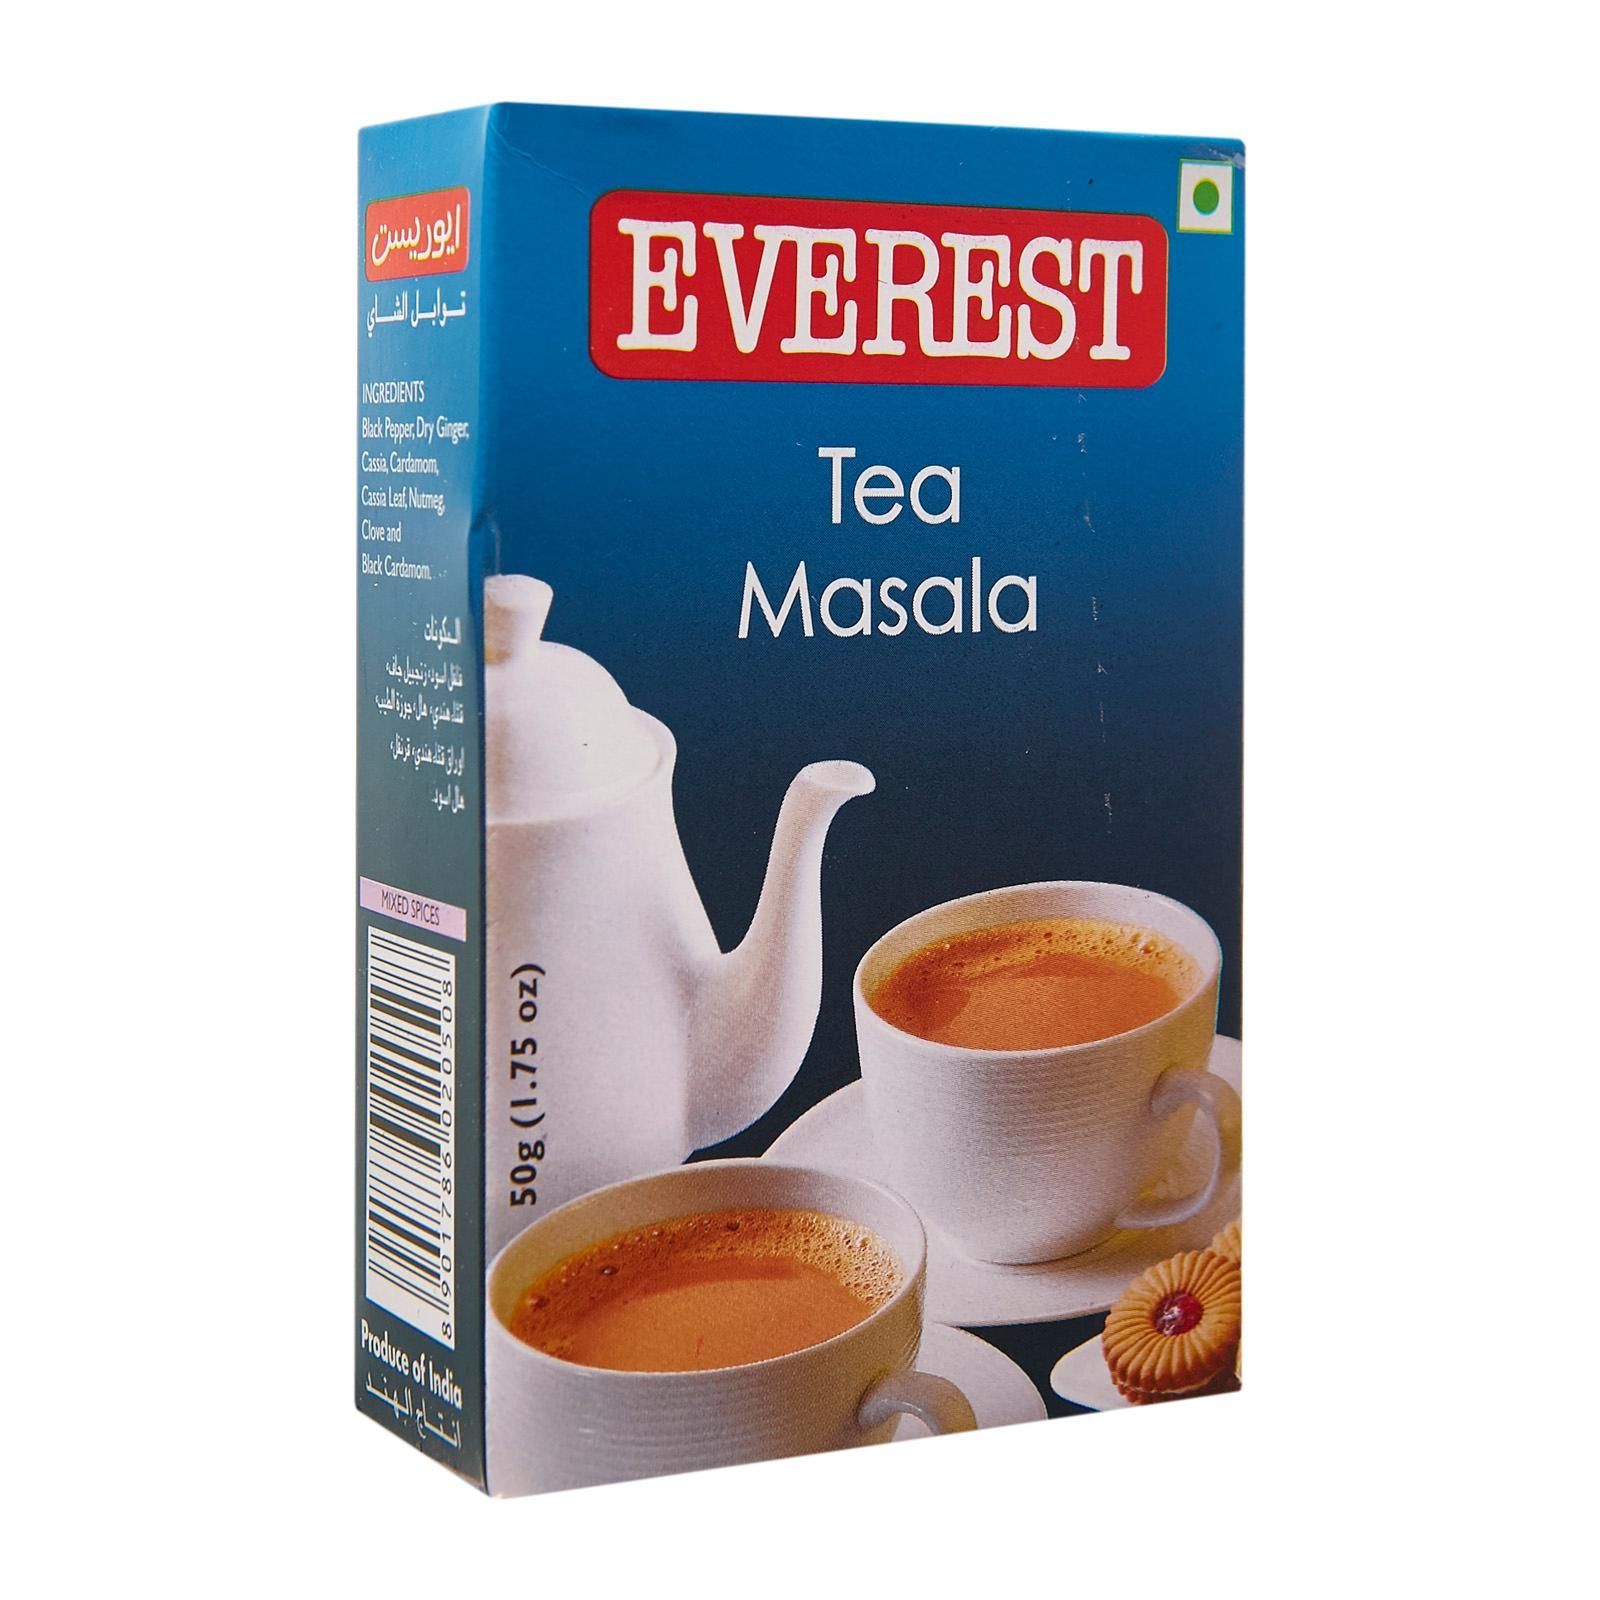 Ти масала смесь специй для Масала чая, Эверест, 50 г. TEA MASALA Everest.